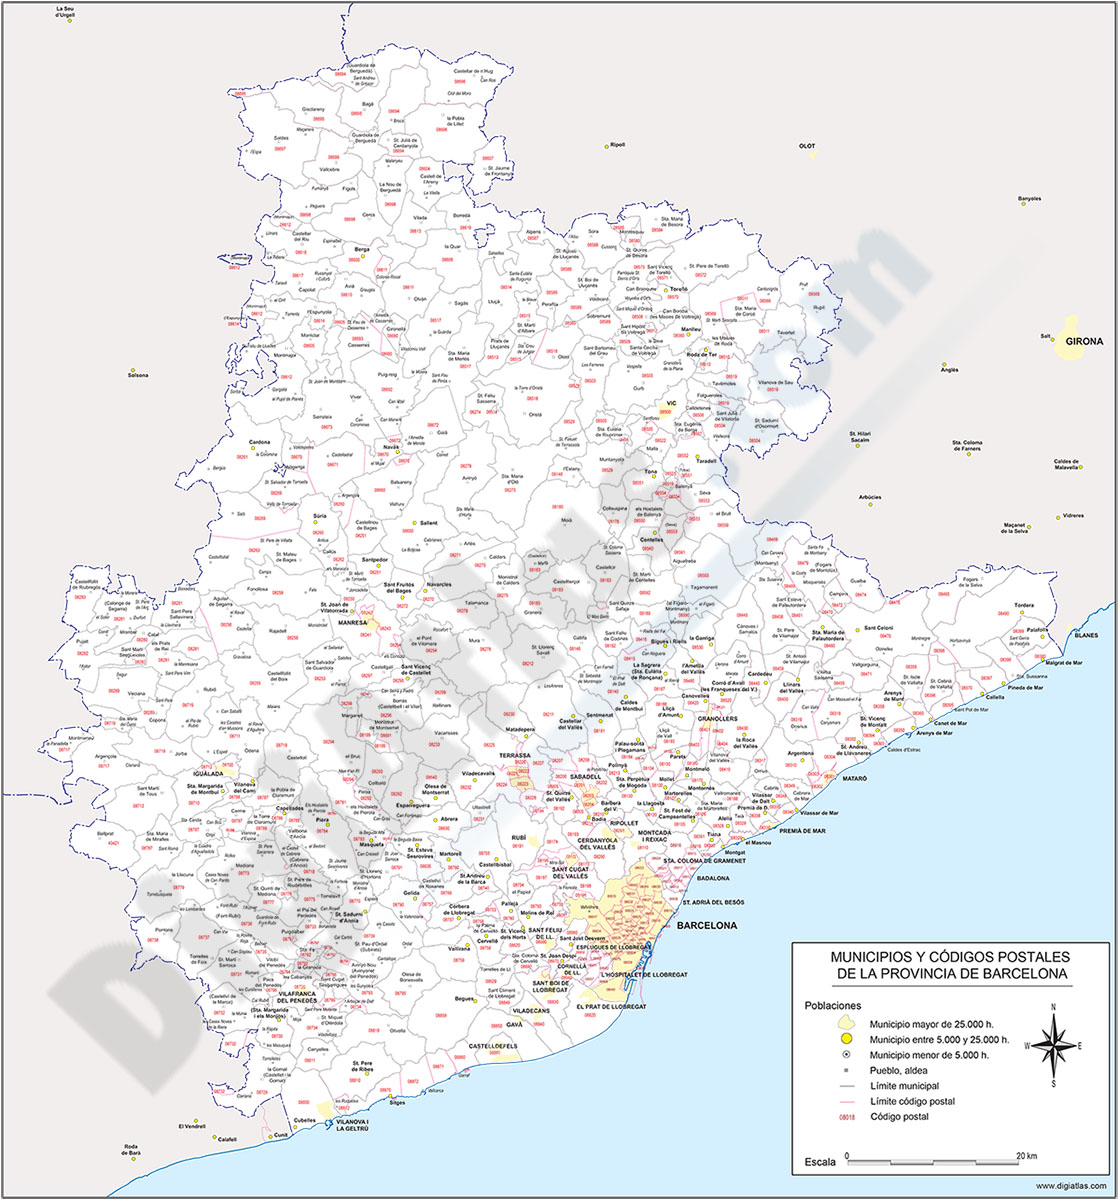 Barcelona - mapa provincial con municipios y Códigos Postales